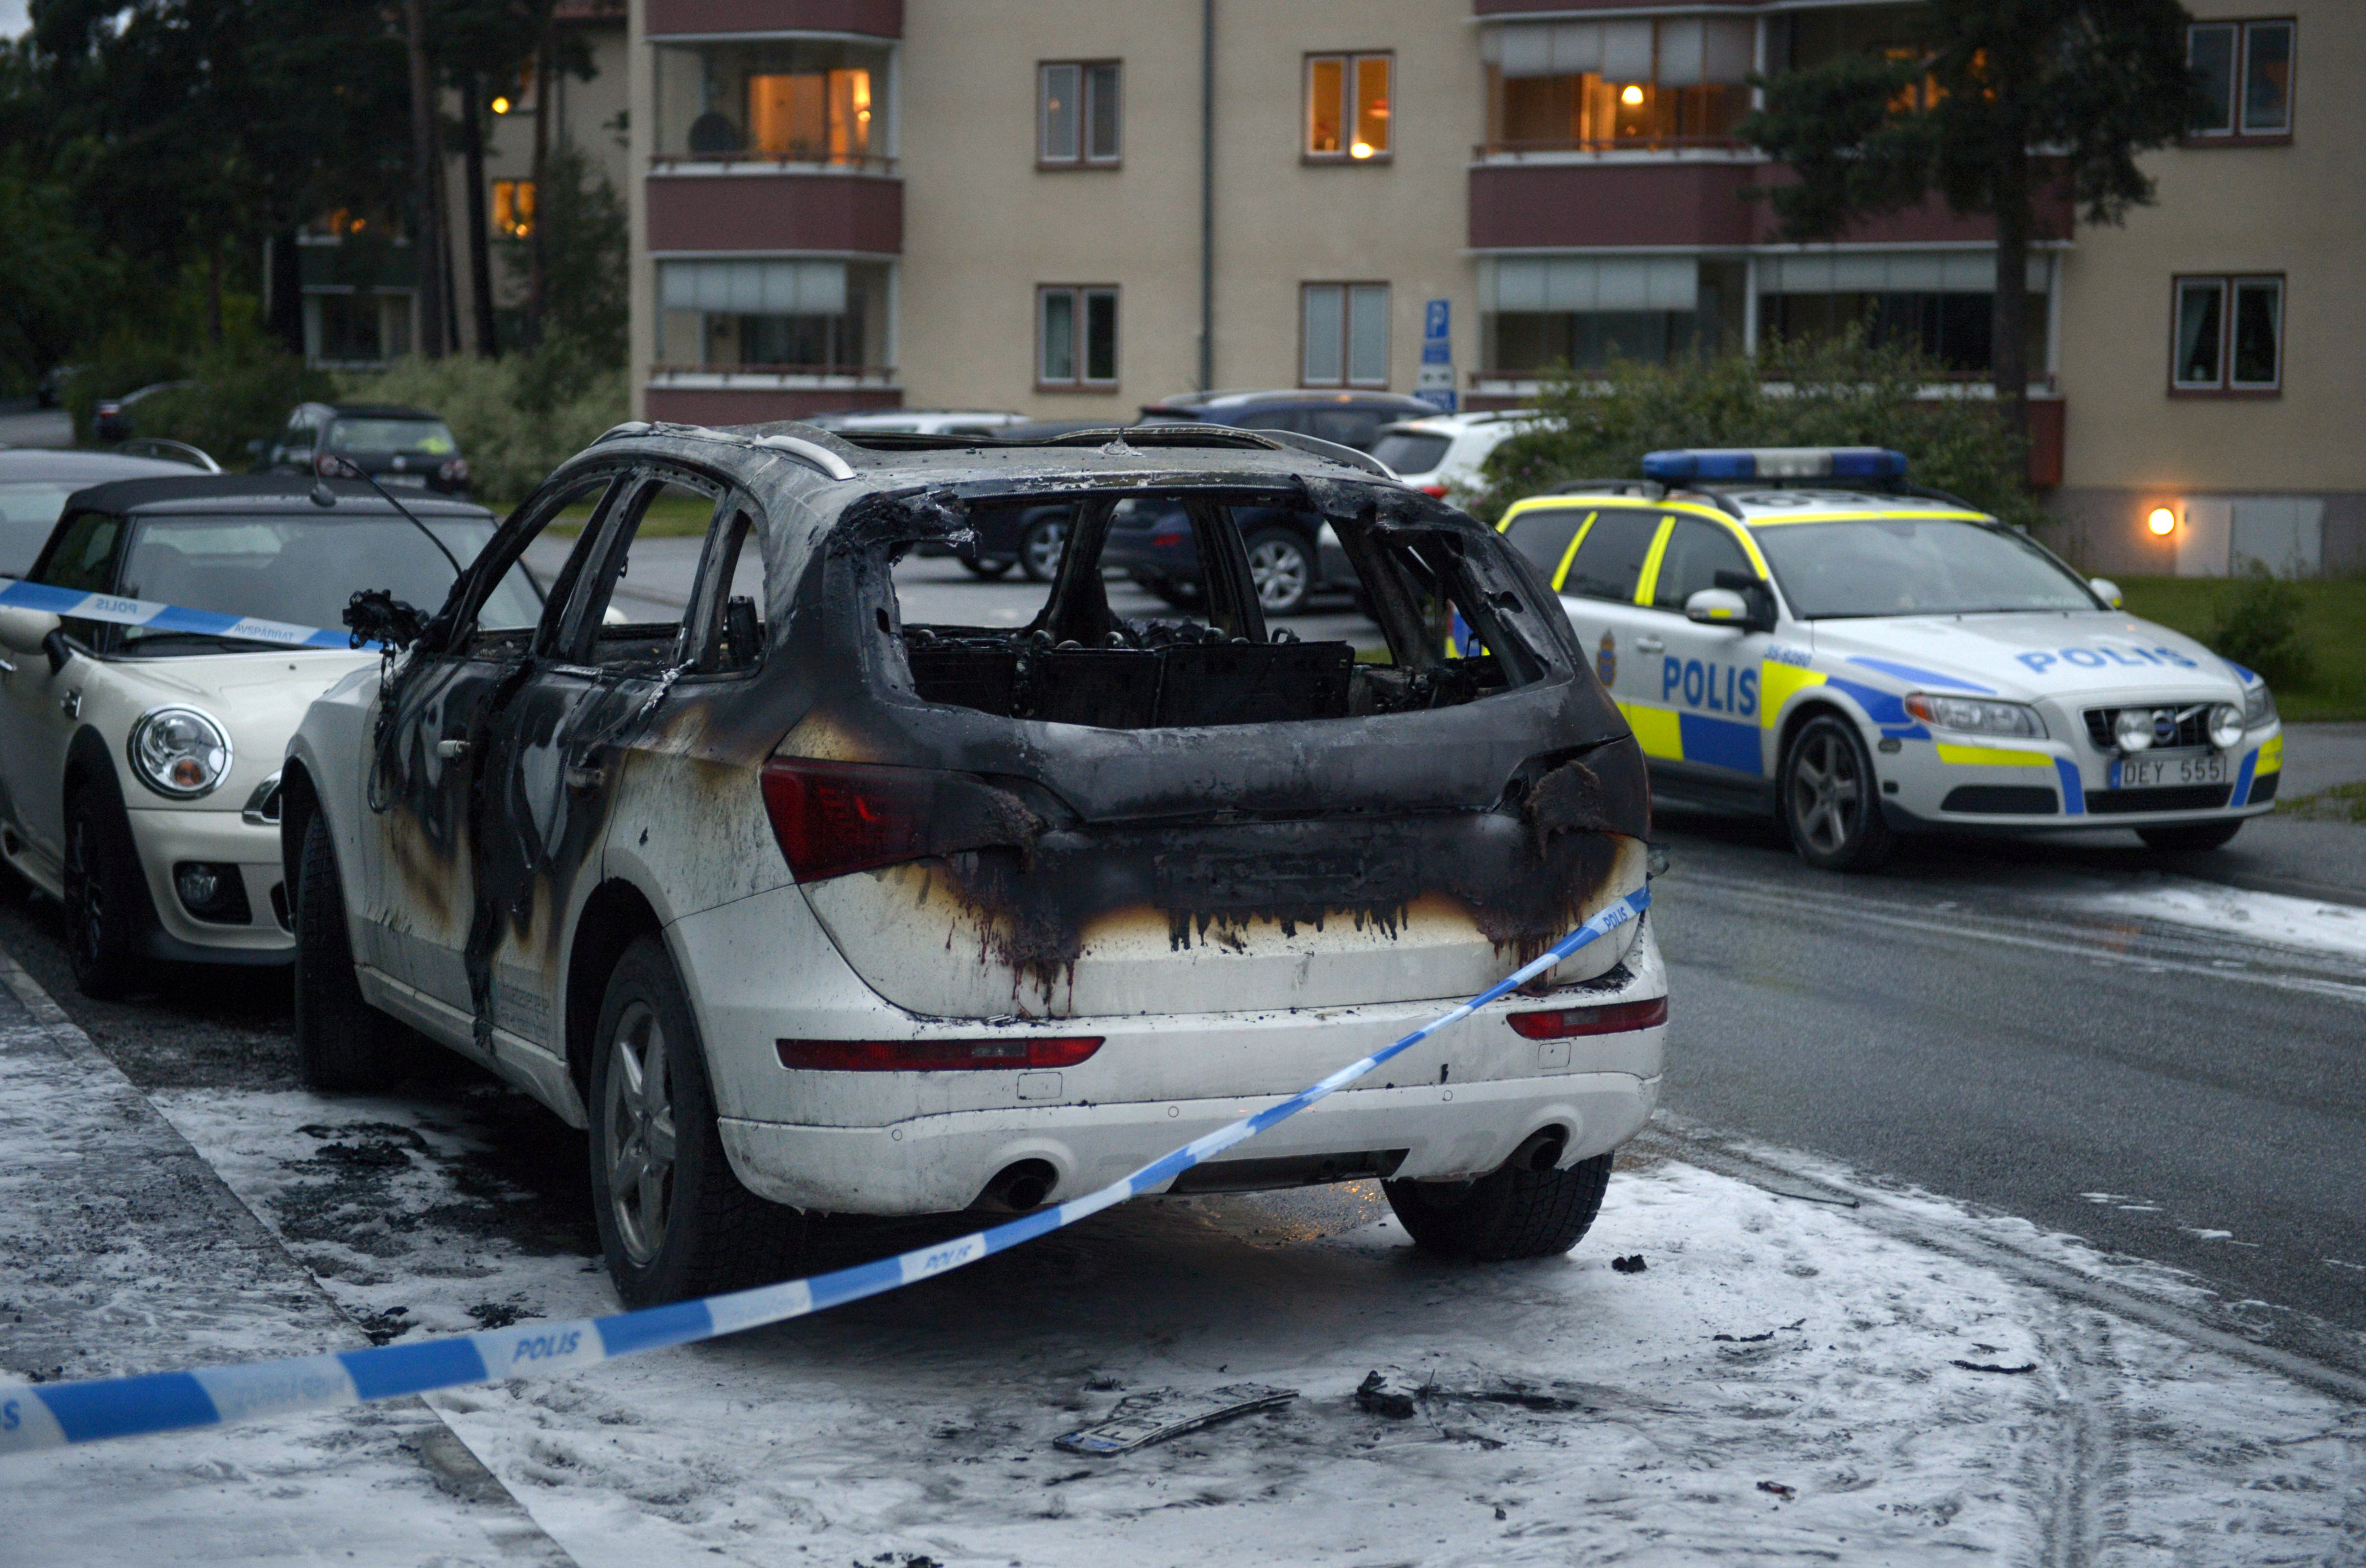 ... total sattes tre bilar i brand på olika platser i norra Stockholm och flera bilar fick punkterade däck efter att ha kört på fotanglar, som ska ha slängts ut av maskerade män i samband med bilbränderna.